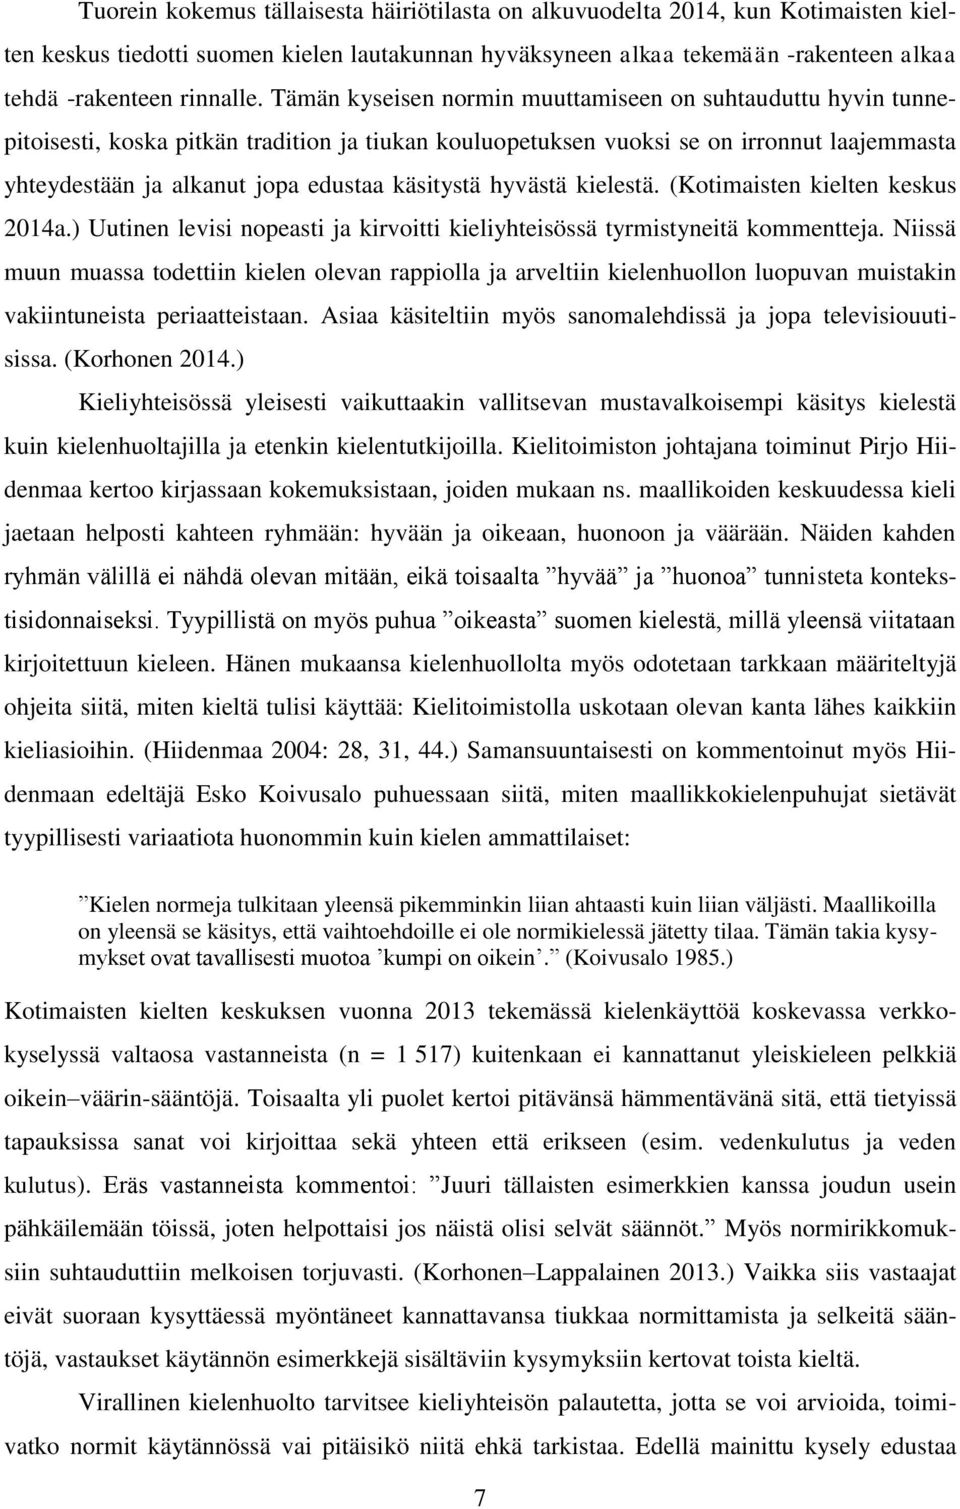 käsitystä hyvästä kielestä. (Kotimaisten kielten keskus 2014a.) Uutinen levisi nopeasti ja kirvoitti kieliyhteisössä tyrmistyneitä kommentteja.